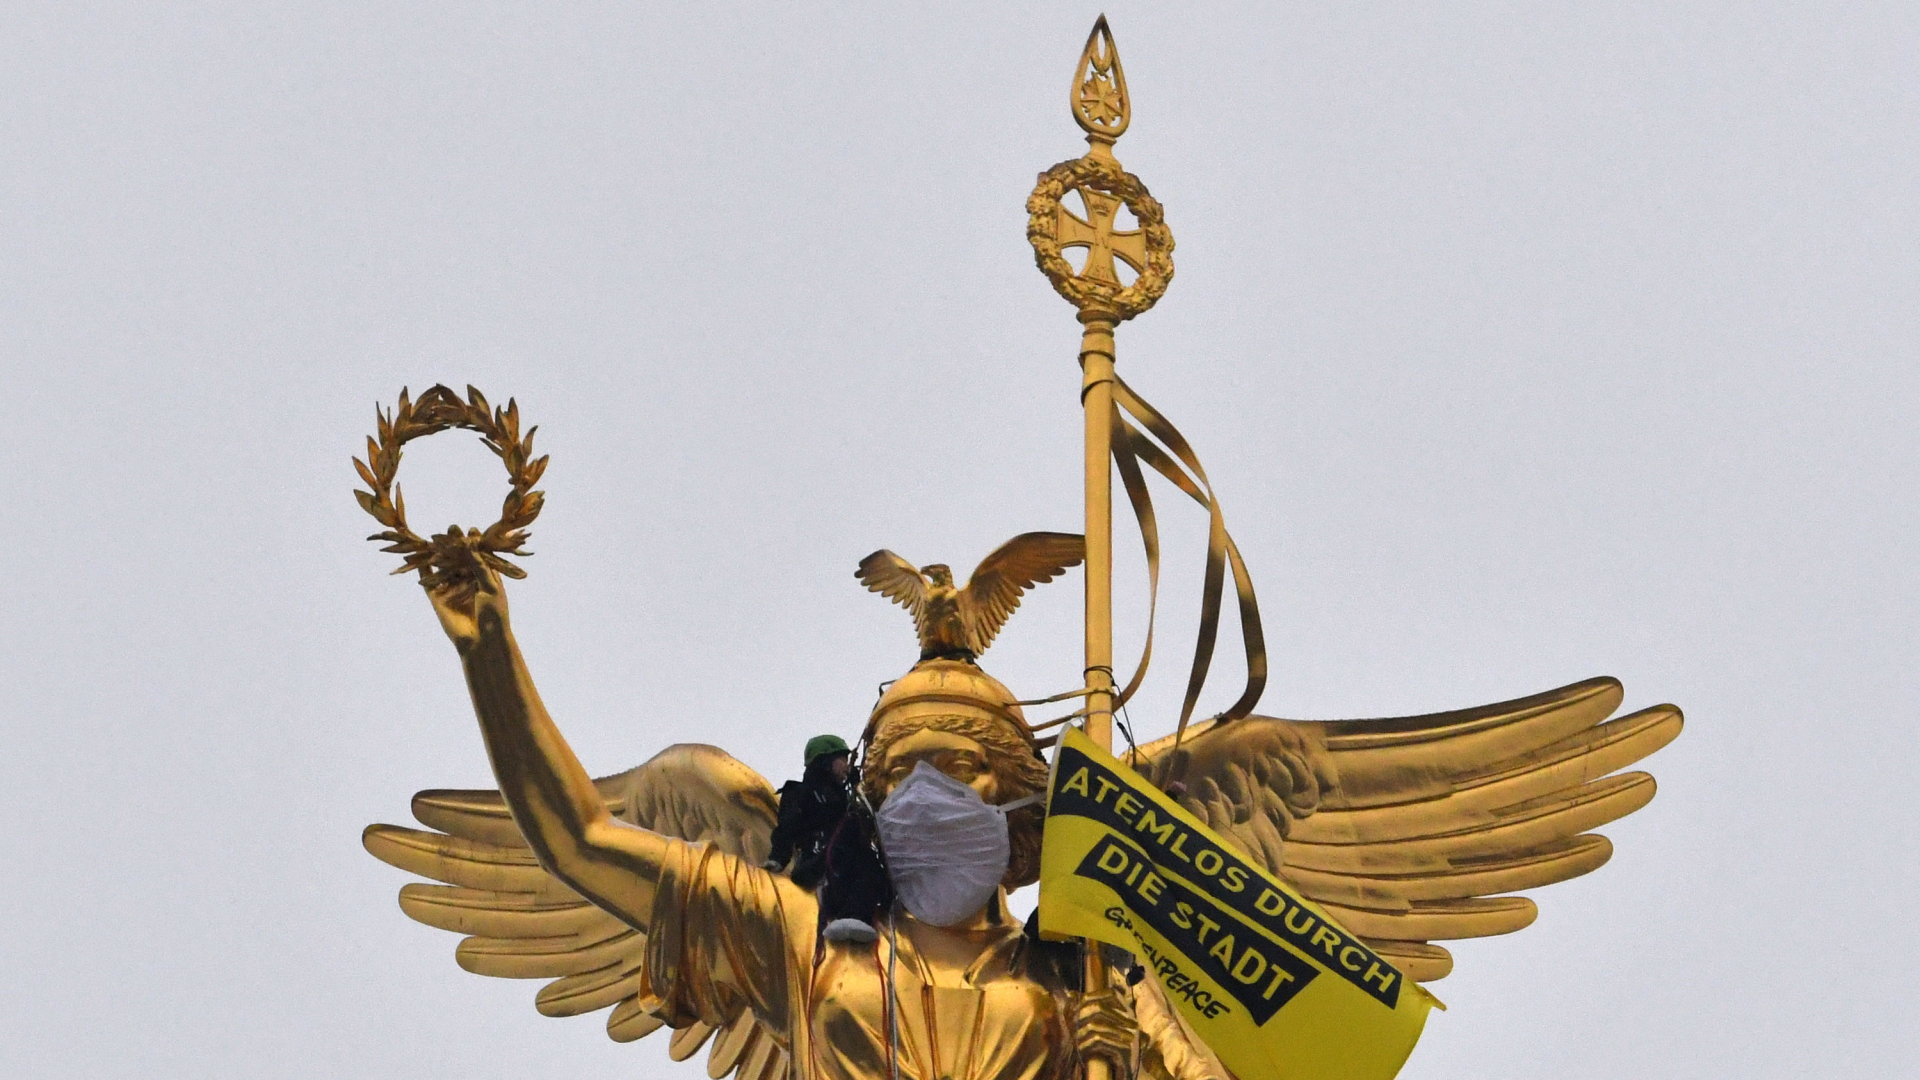 Aktivisten der Umweltschutzorganisation Greenpeace haben der Statue auf der Siegessäule eine Atemschutzmaske übergezogen. | dpa